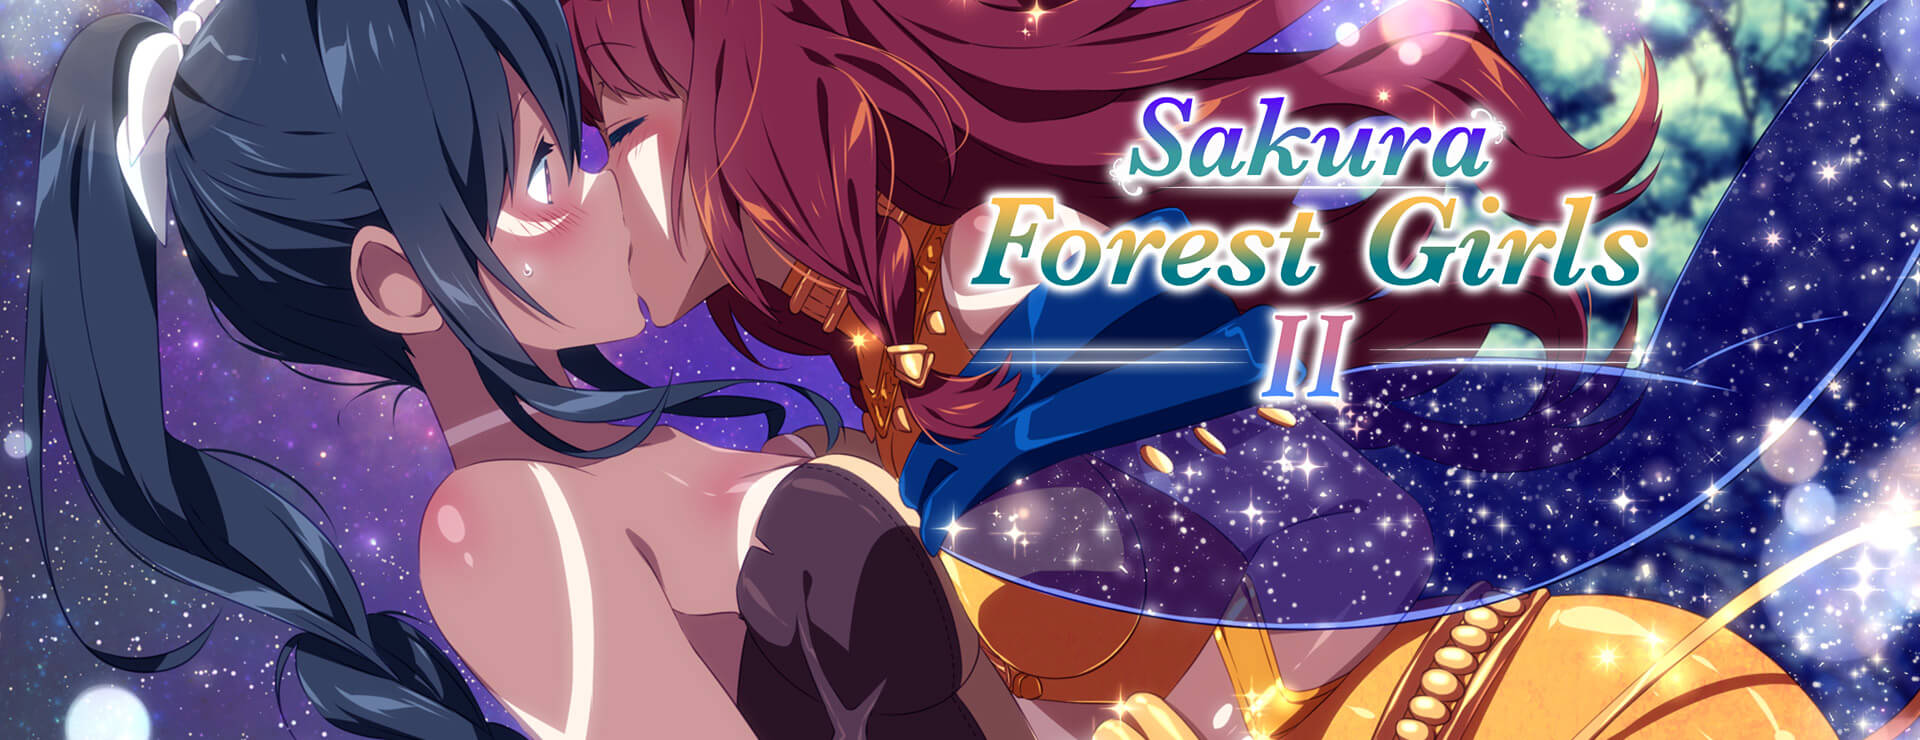 Sakura Forest Girls 2 - Powieść wizualna Gra